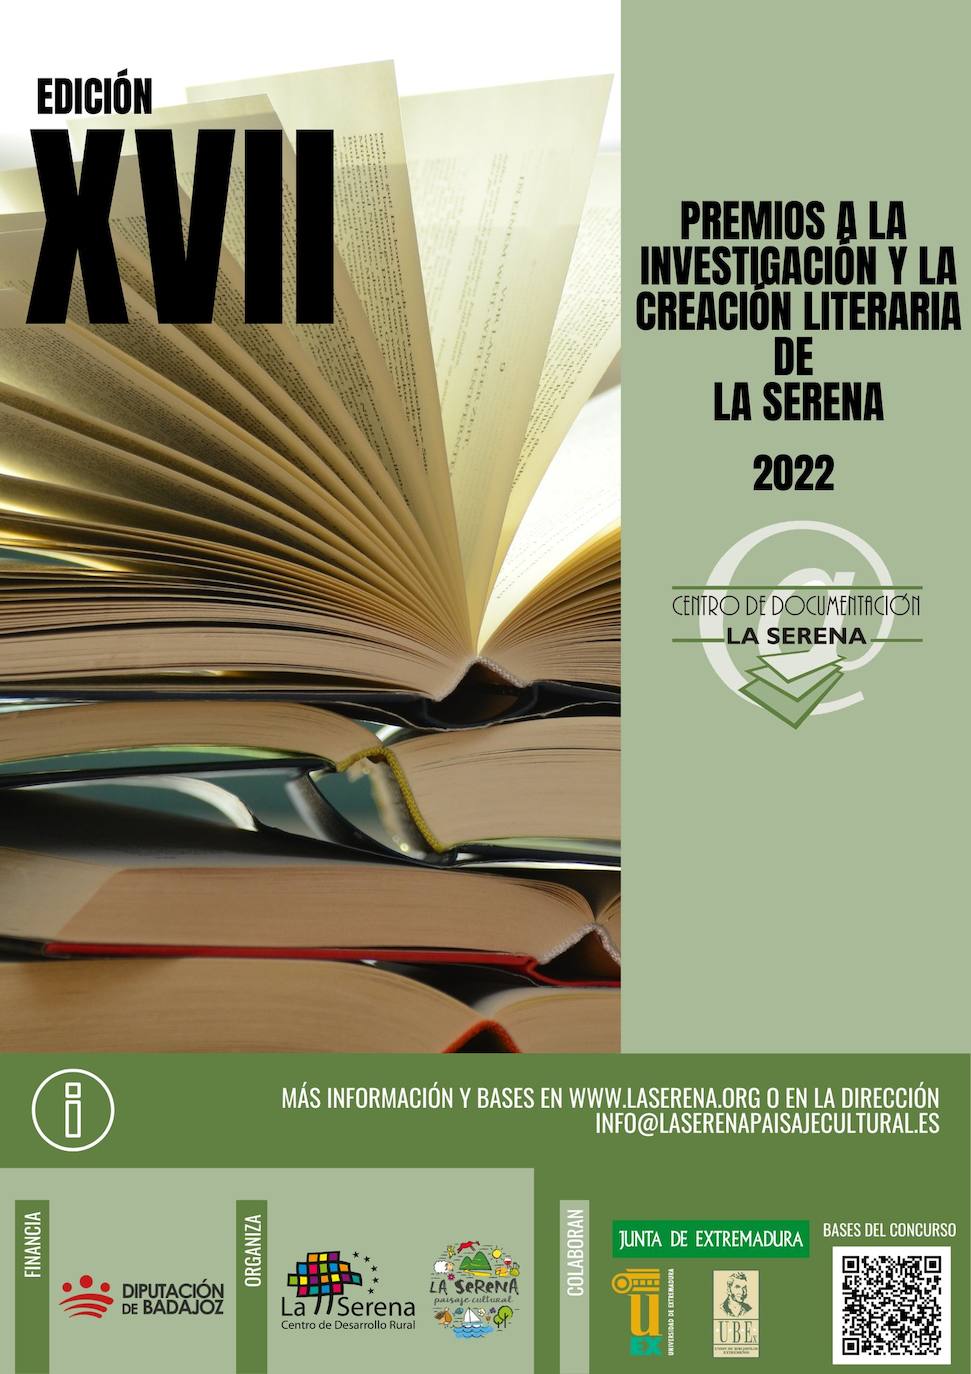 Convocada la XVII Edición de los Premios a la Investigación y Creación Literaria de La Serena